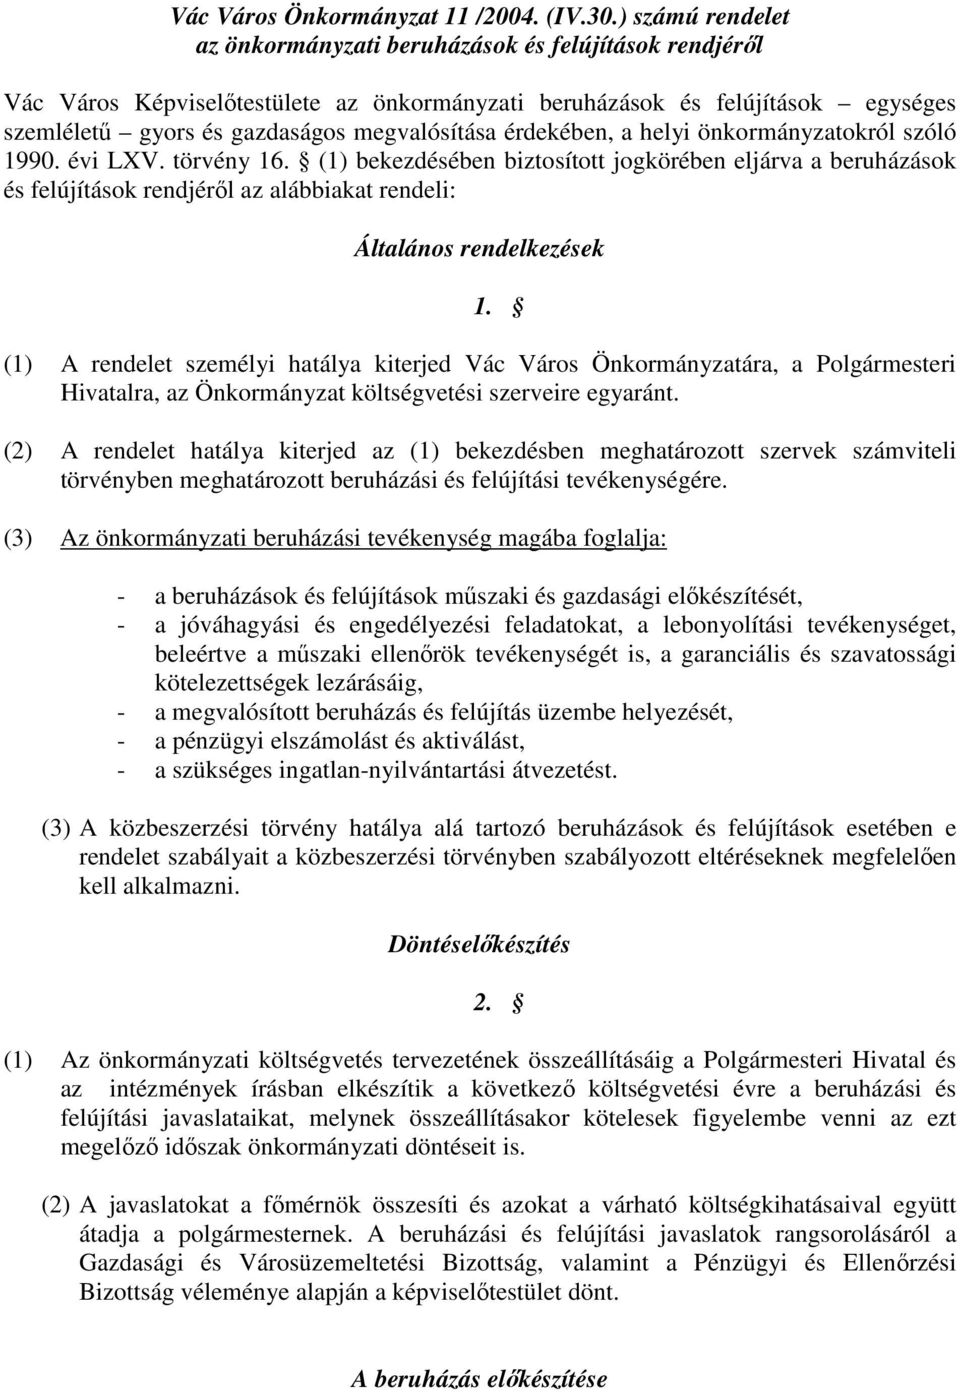 érdekébe, a helyi ökormáyzatokról szóló 1990. évi LXV. törvéy 16. (1) bekezdésébe biztosított jogkörébe eljárva a beruházások és felújítások redjéről az alábbiakat redeli: Általáos redelkezések 1.